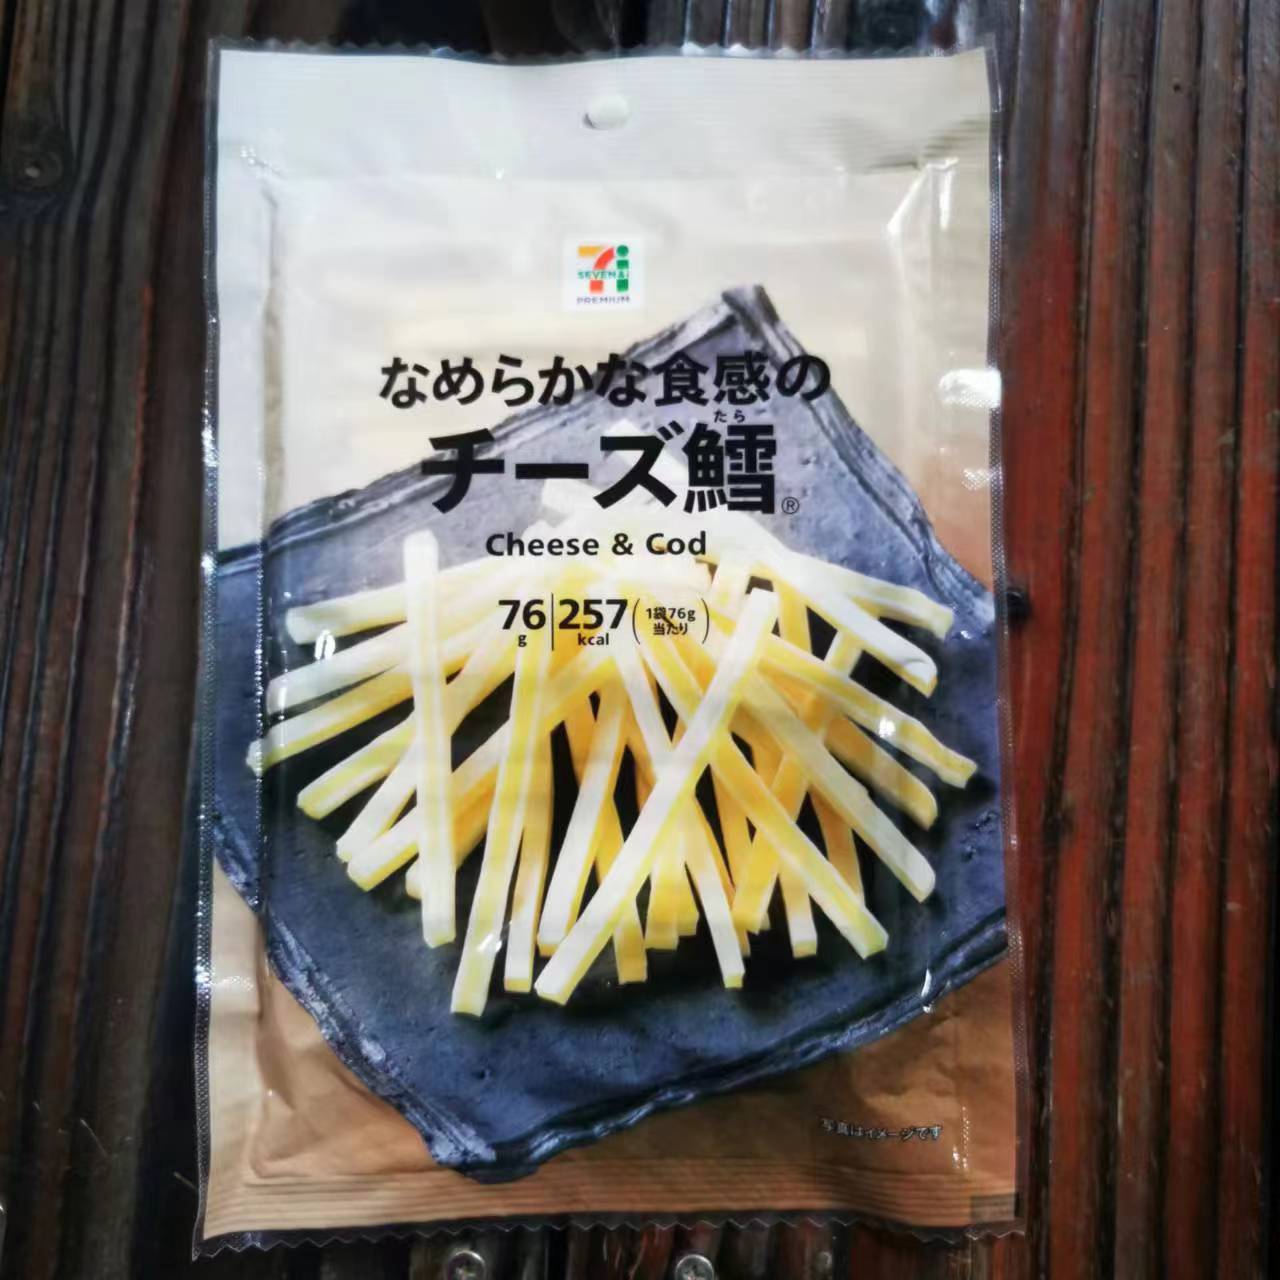 现货日本超市711全家 罗森 混合奶酪条芝士条/鳕鱼条